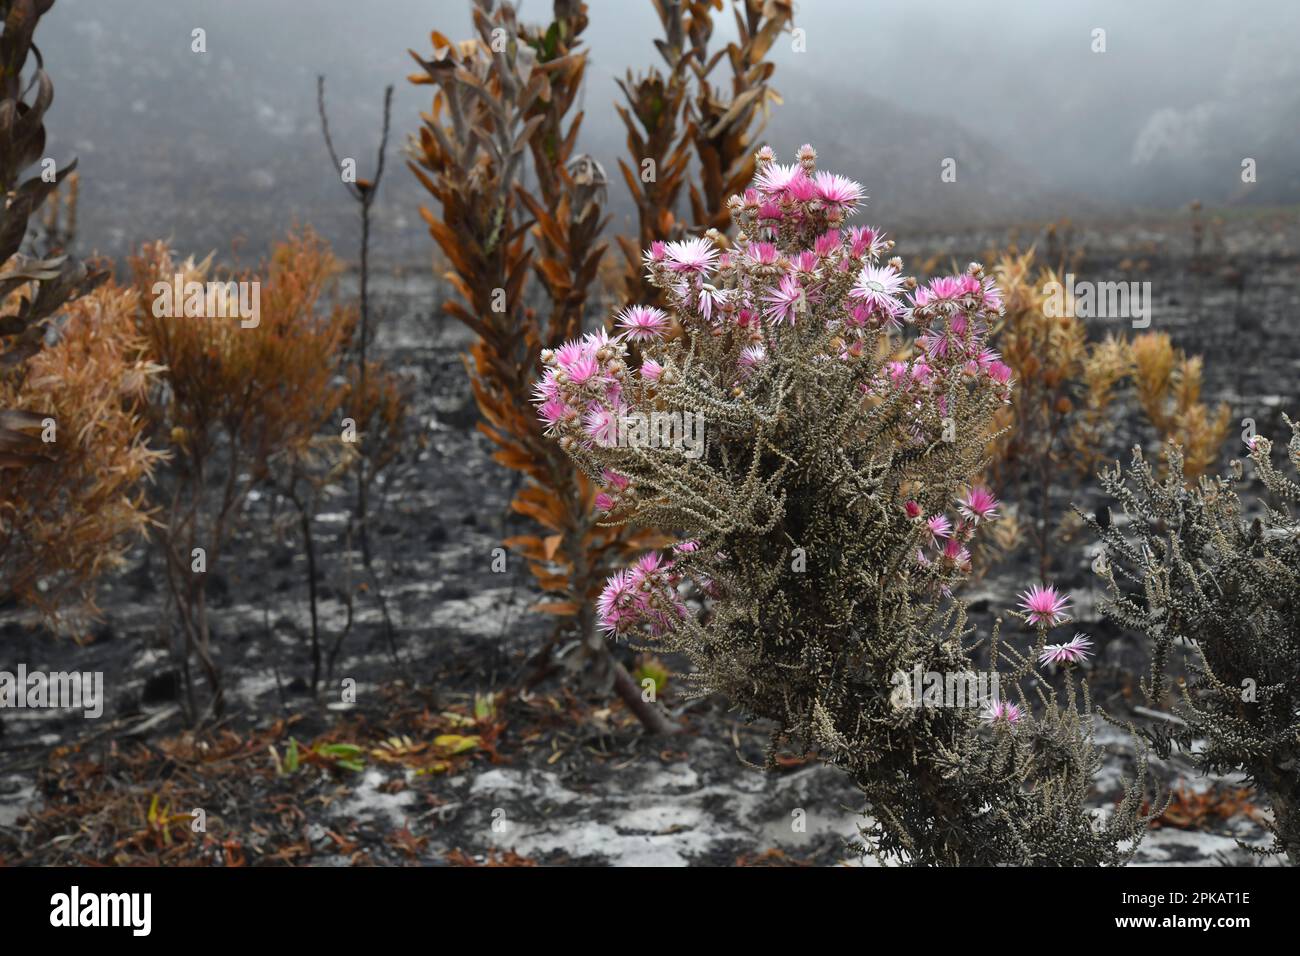 Planta de fynbos (Phaenocoma prolifera), recuperándose después de un incendio dañino, Kleinmond, Sudáfrica. Foto de stock